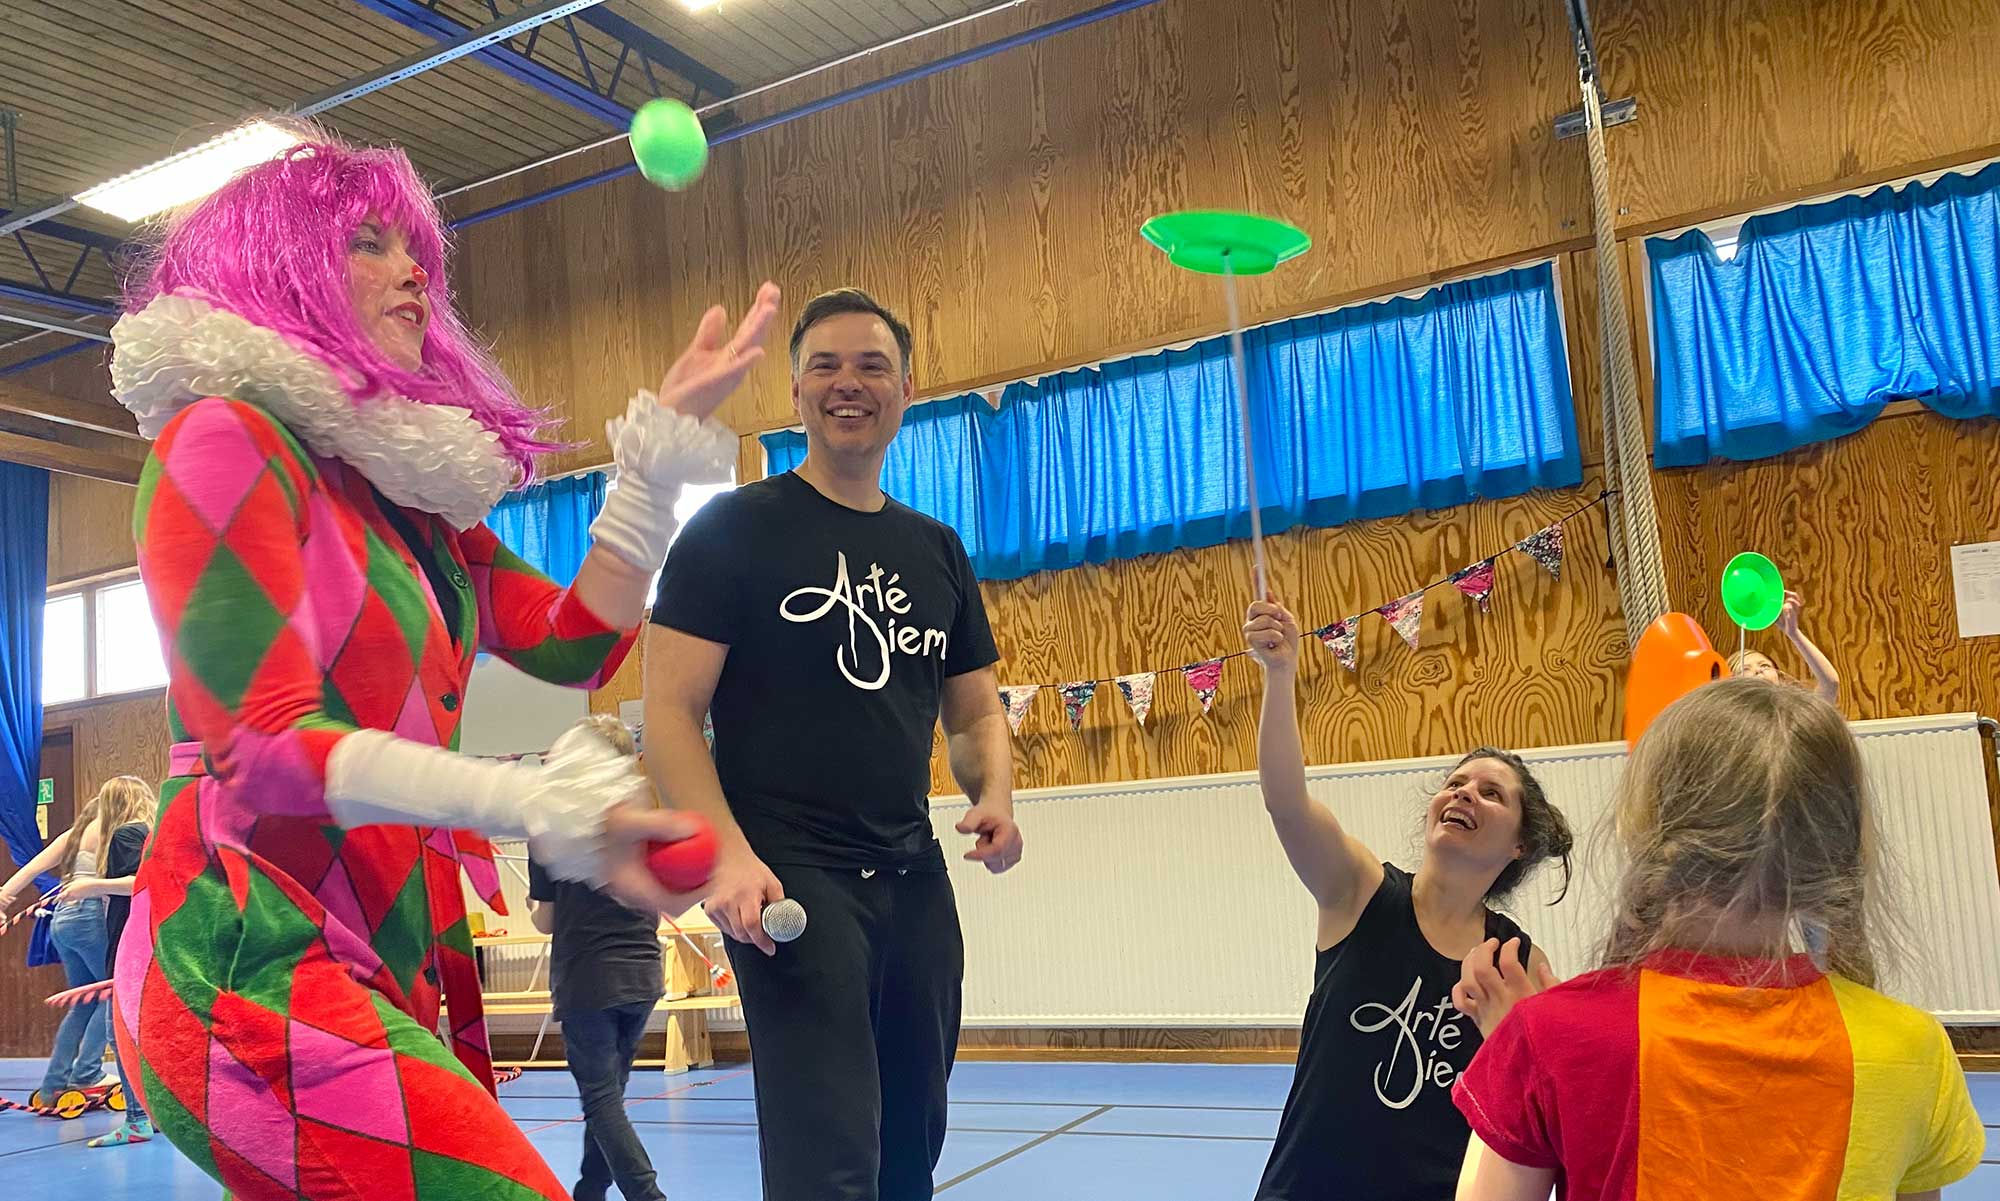 Cirkus- och akrobatikgruppen Cirque Arté Diem gör cirkuskonster på Långaröds skola och fritidshem i Hörby.